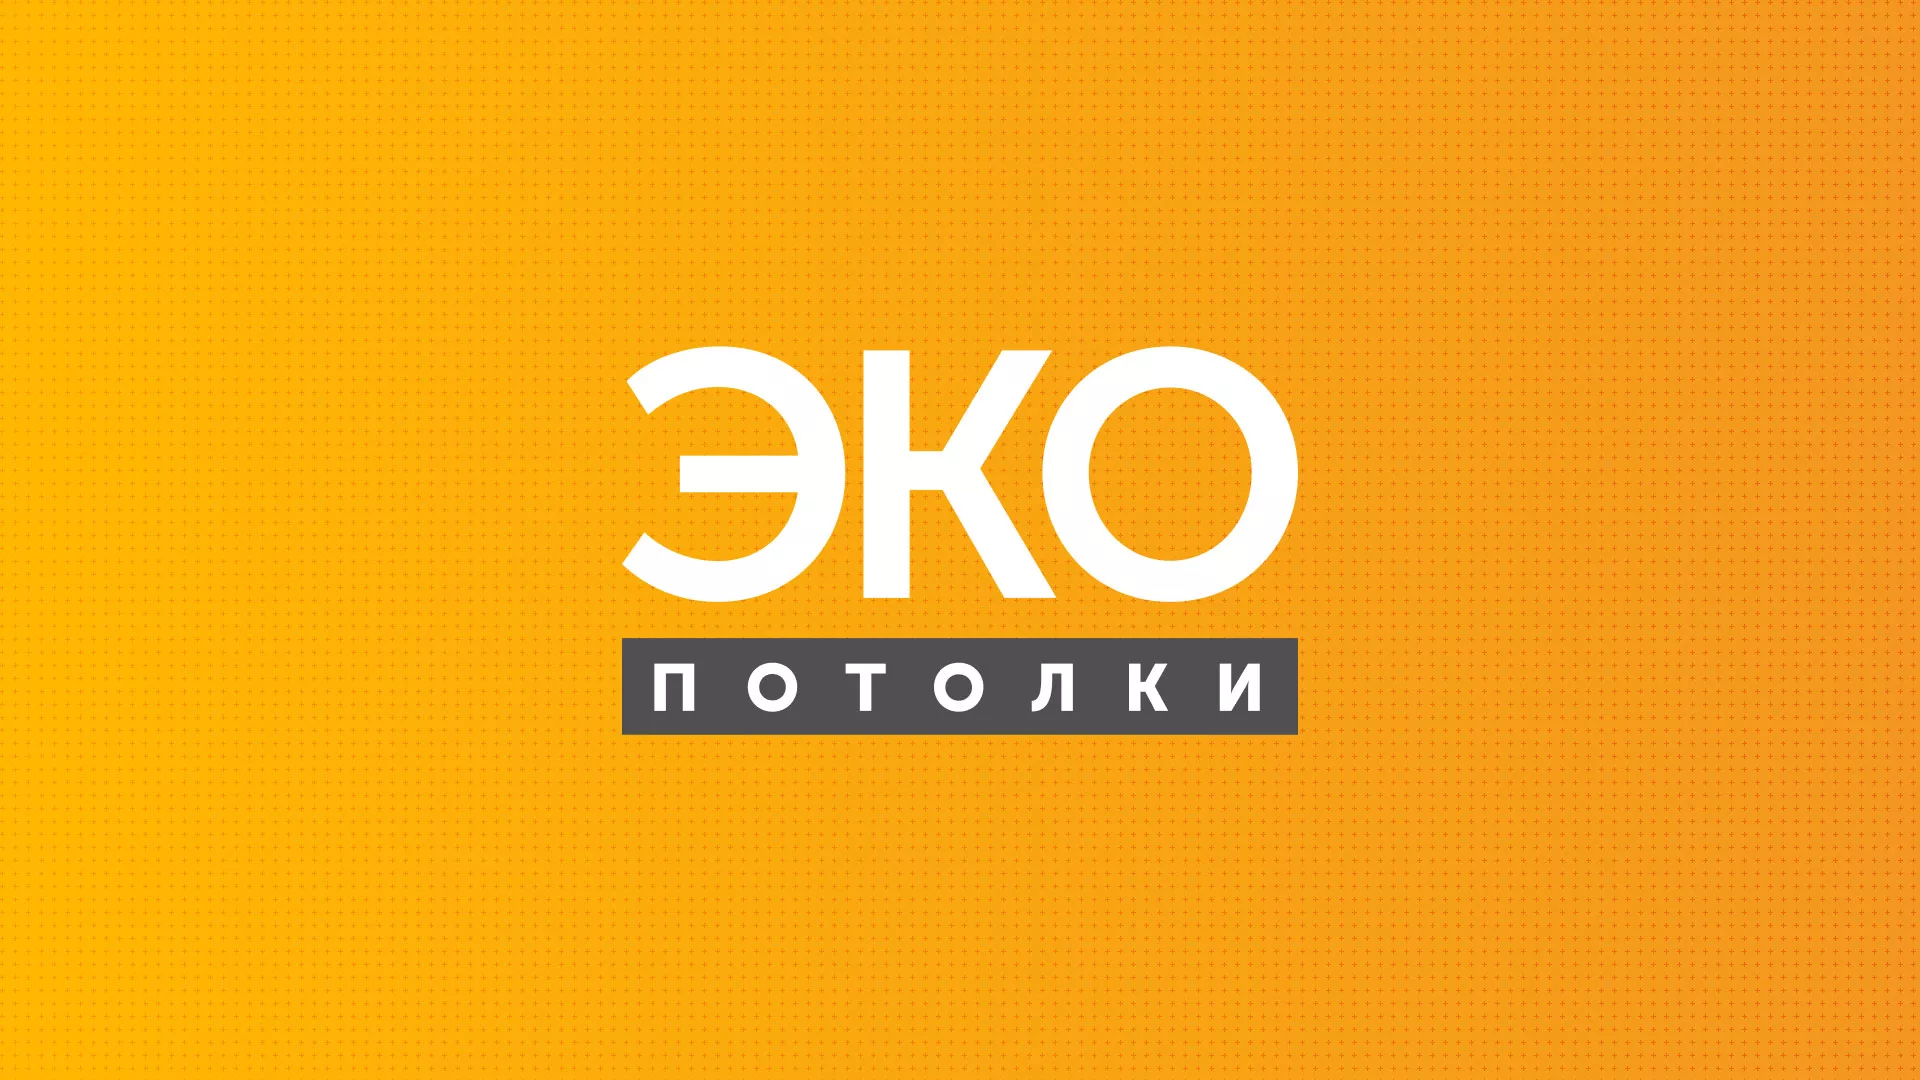 Разработка сайта по натяжным потолкам «Эко Потолки» в Малоархангельске